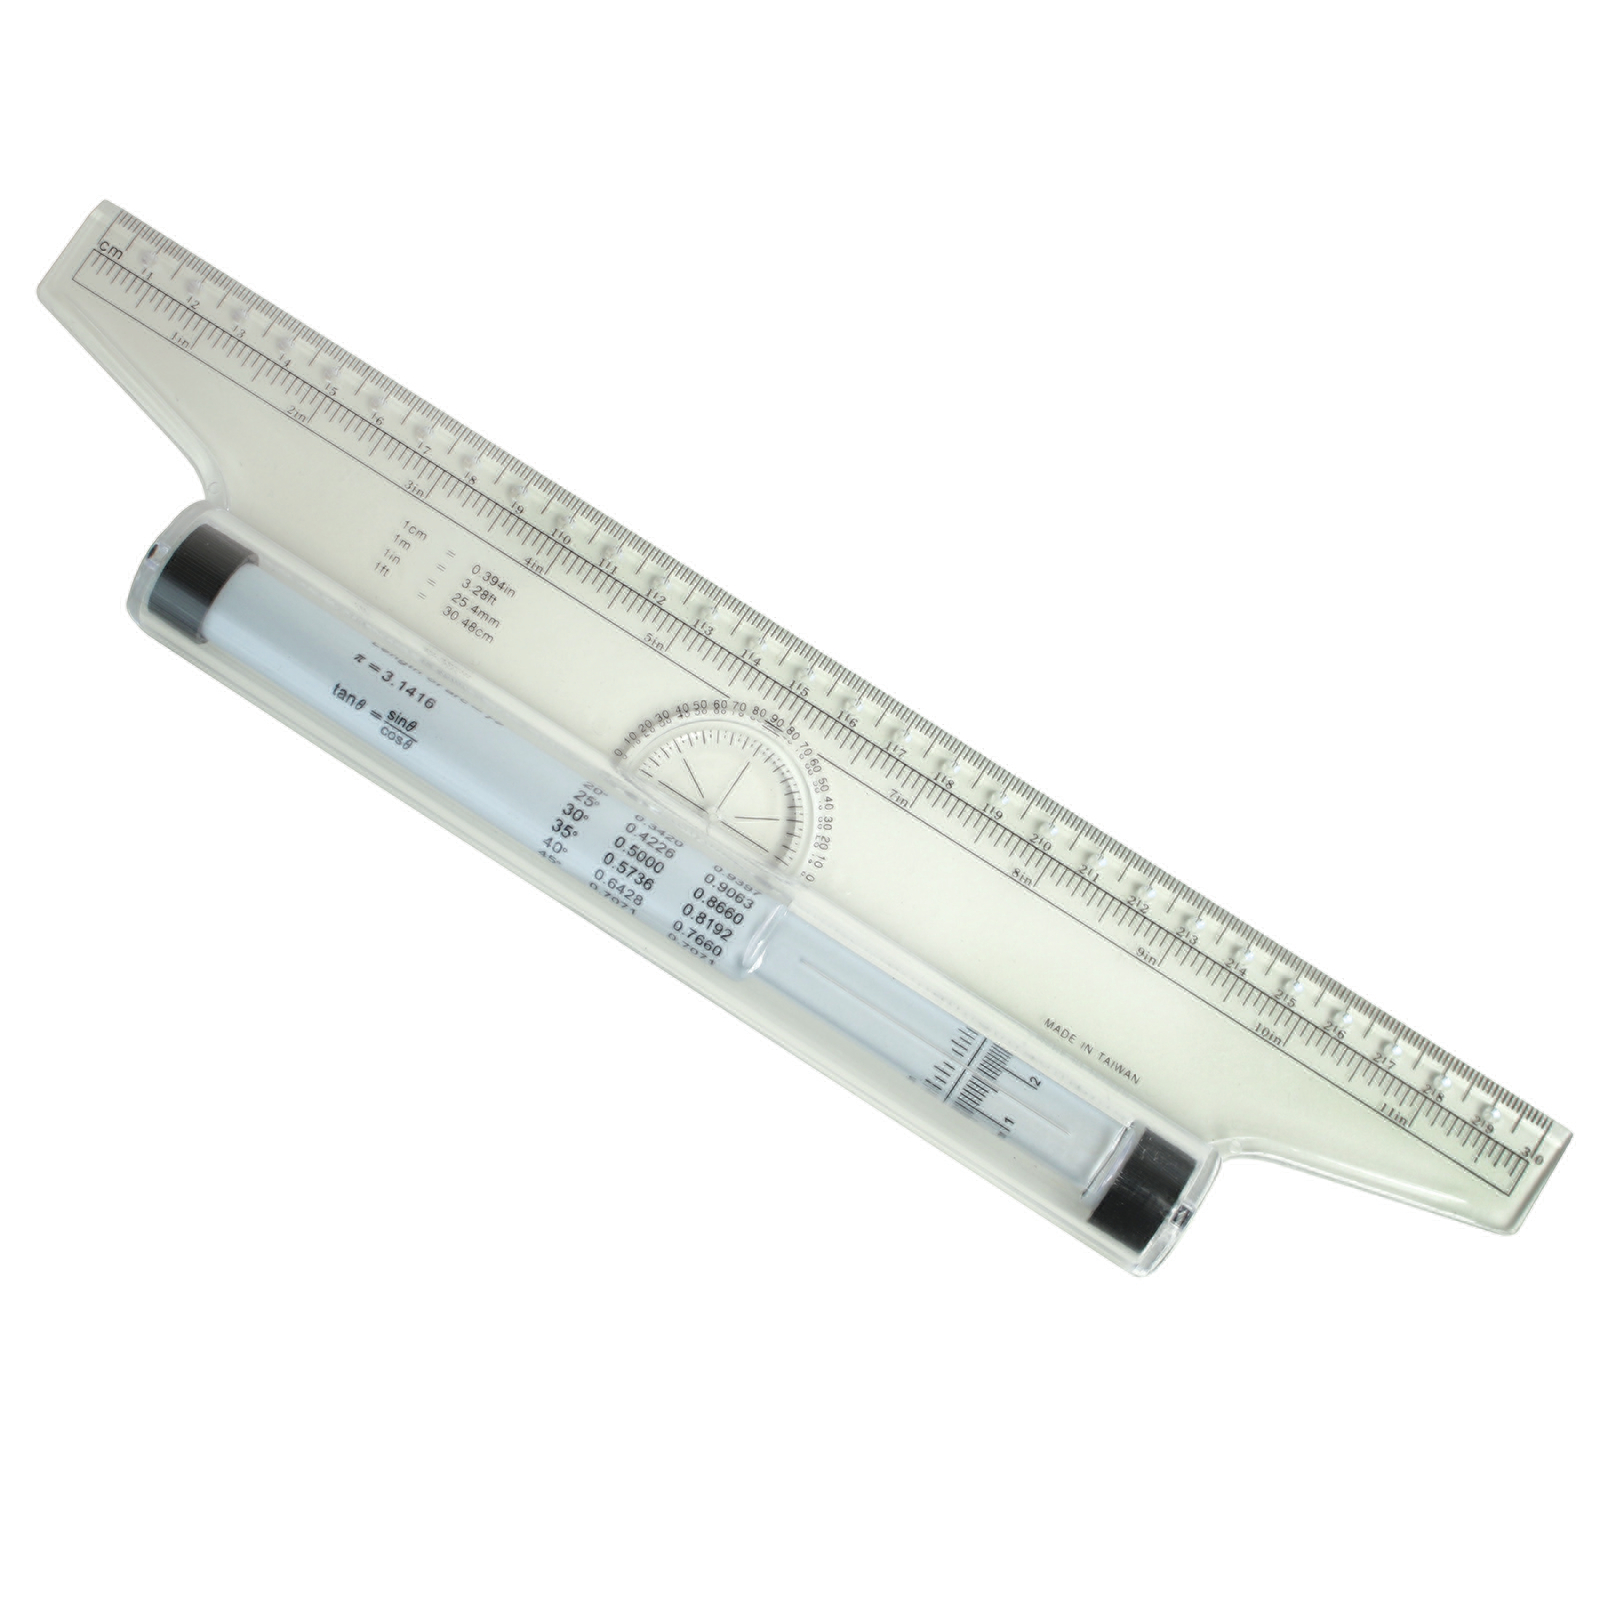 PARALLEL RULER ROLLER Ruler Design Drawing Ruler Tool B6 L7 L2N6 $10.69 -  PicClick AU